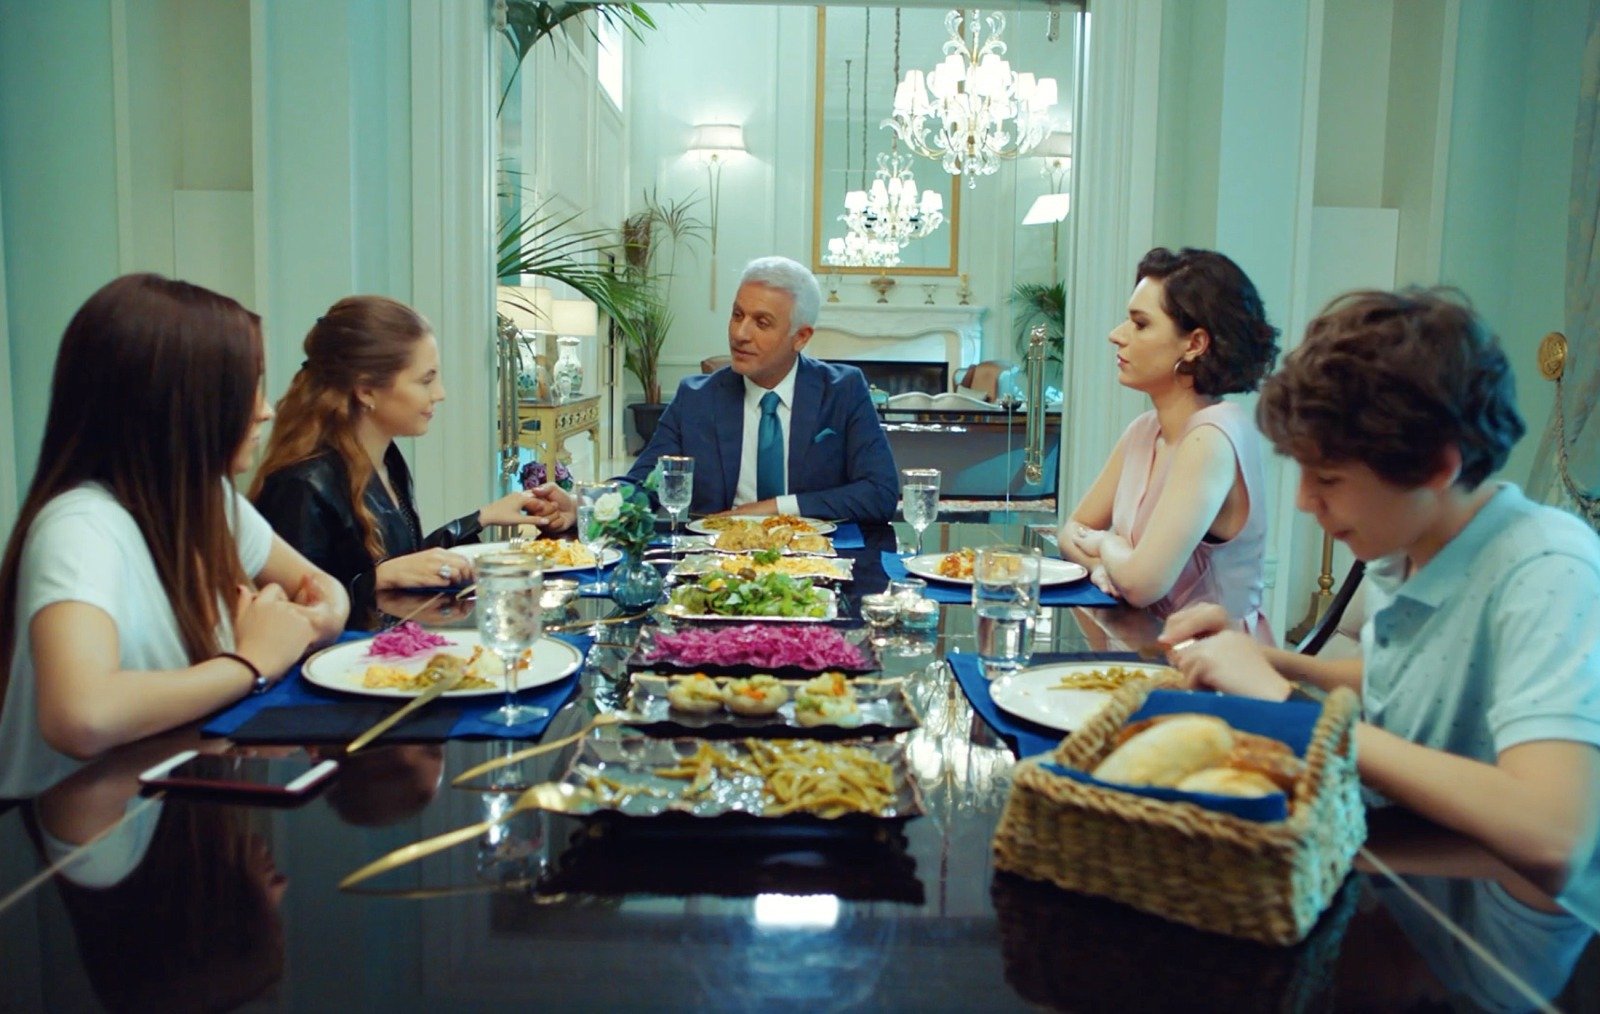 La primera cena familiar de Halit y Yildiz tras anunciar su compromiso, en Pecado original